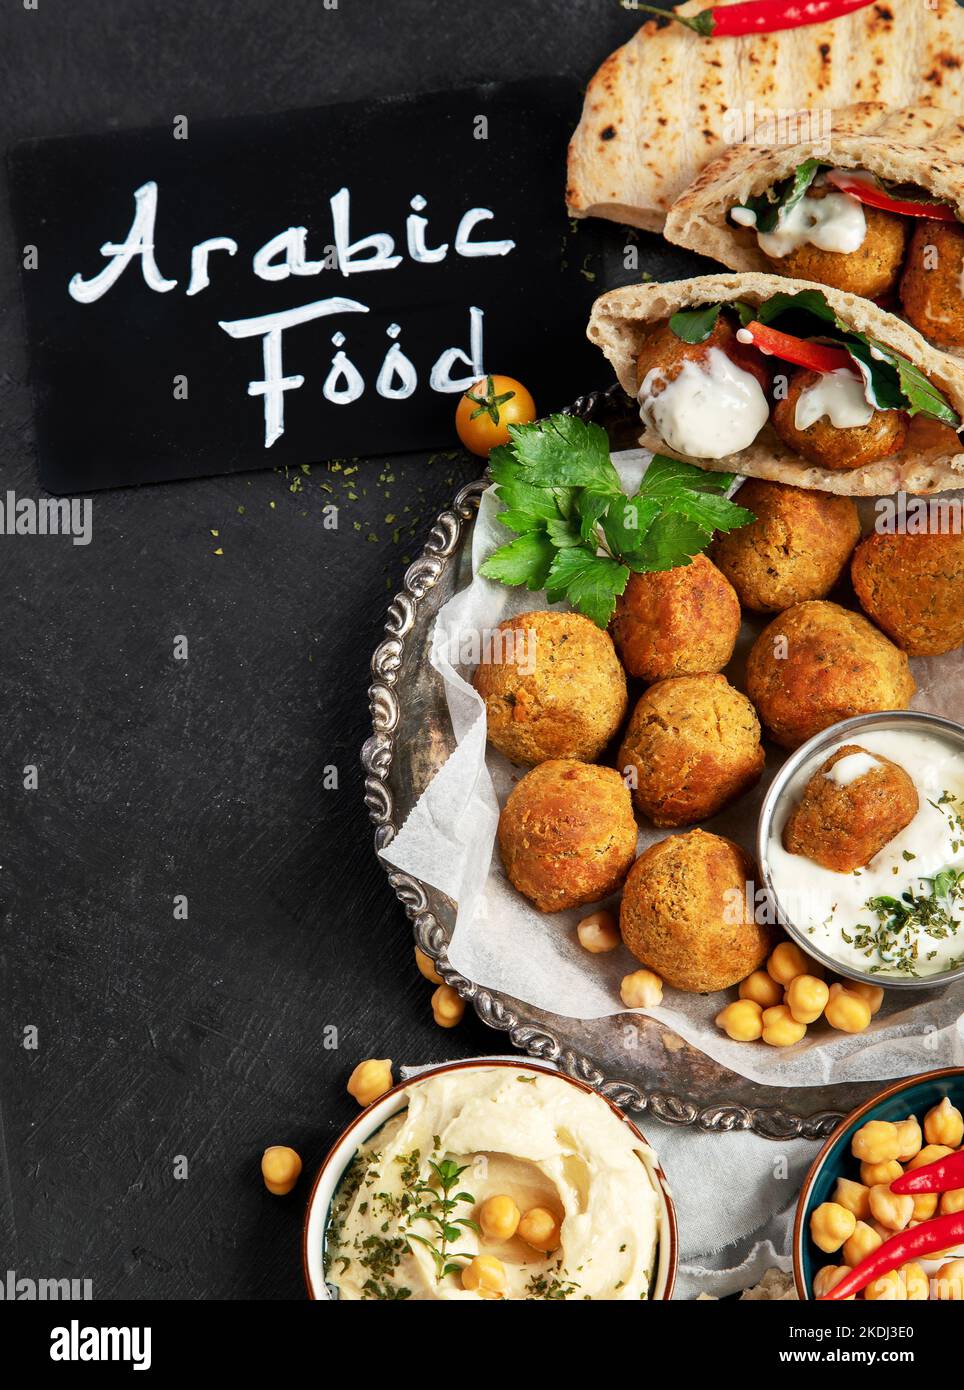 Medio Oriente, piatti arabi con falafel, hummus, pita. Halal cibo. Cucina libanese. Vista dall'alto Foto Stock